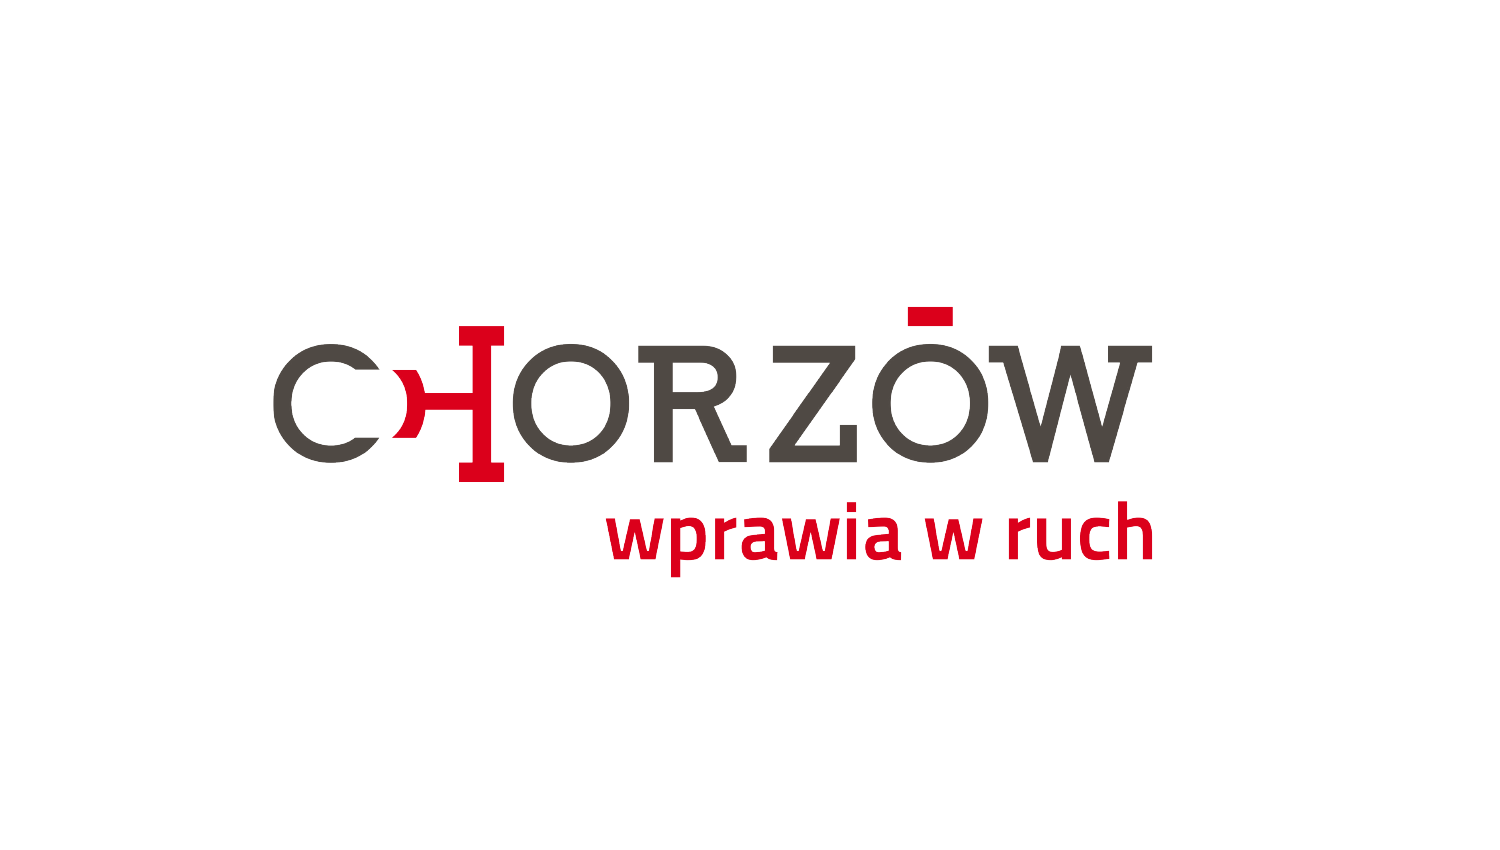 Eskadra - Chorzow sets in motion - Chorzow City